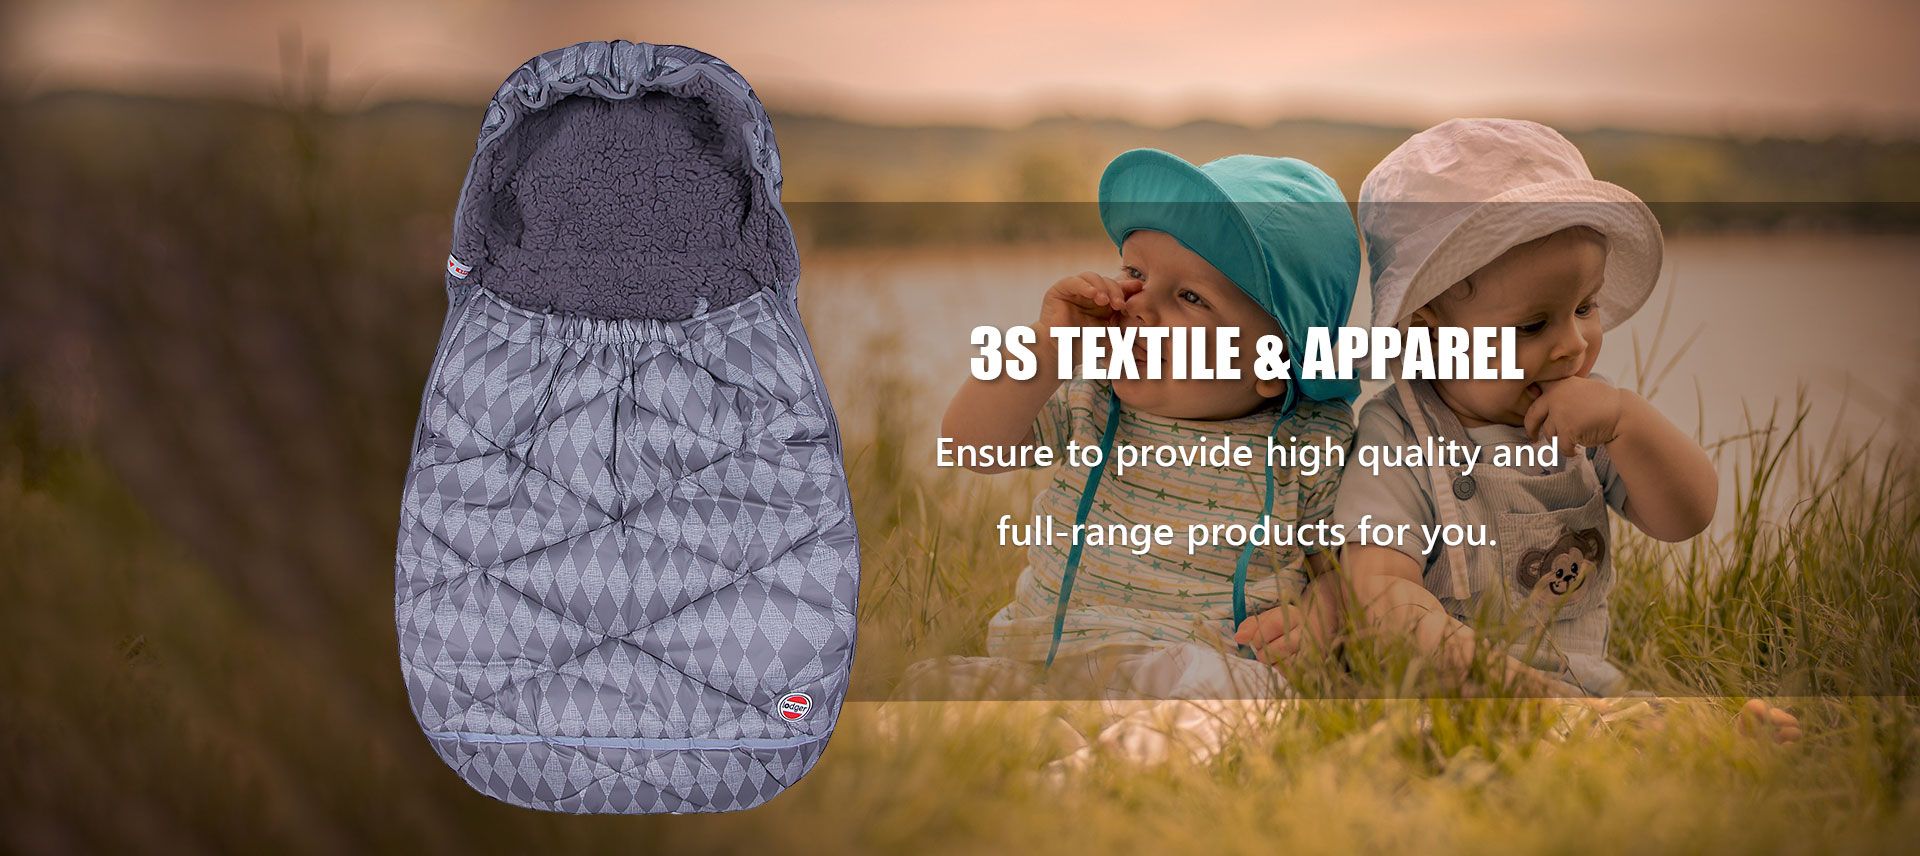 3S Textile & Apparel